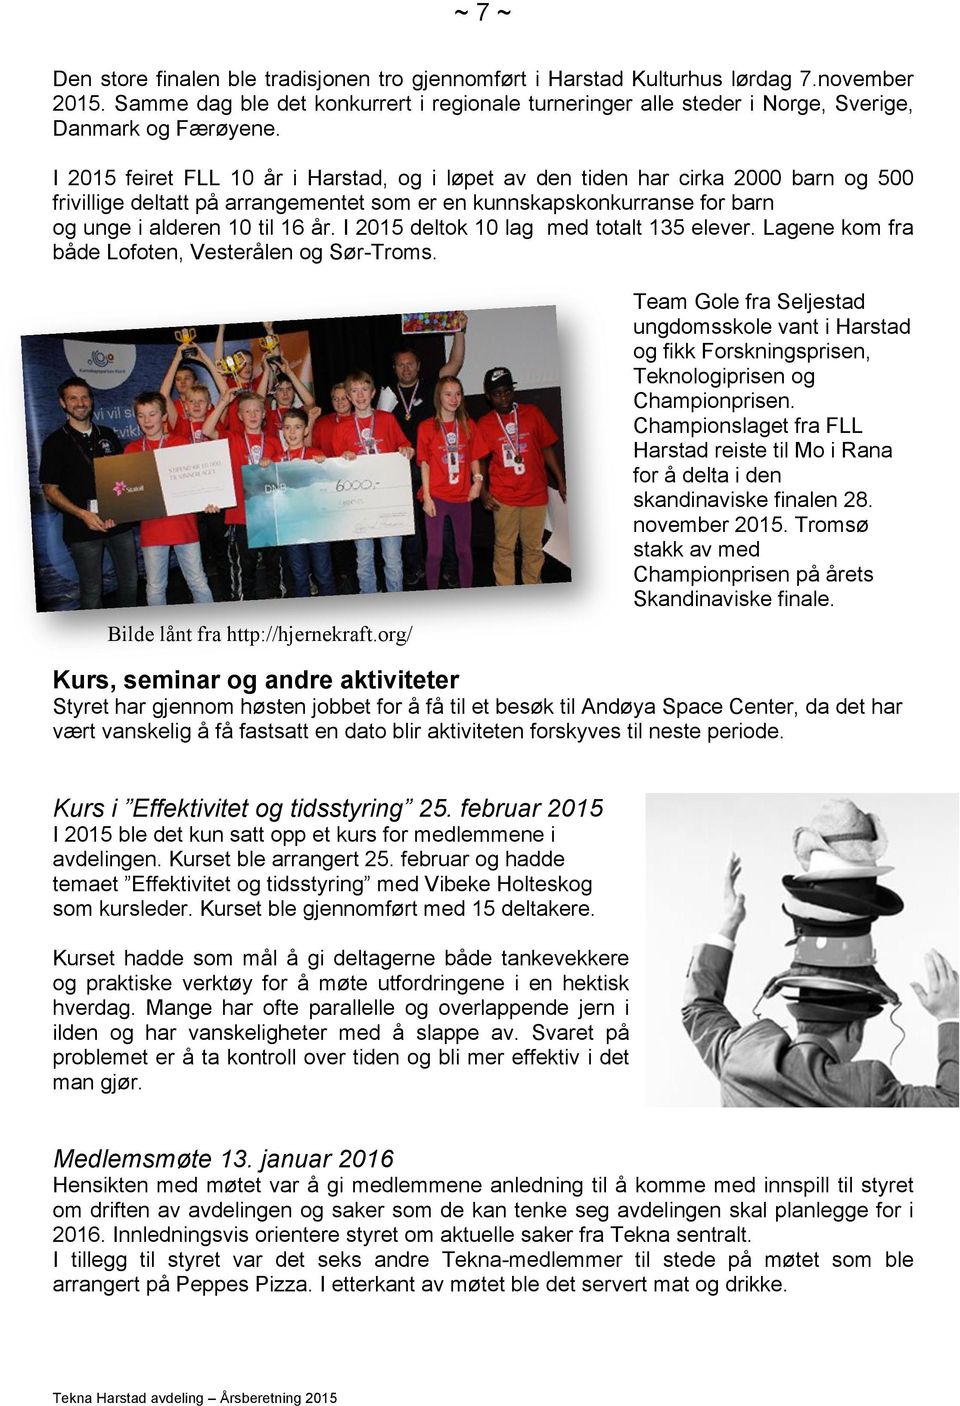 I 2015 feiret FLL 10 år i Harstad, og i løpet av den tiden har cirka 2000 barn og 500 frivillige deltatt på arrangementet som er en kunnskapskonkurranse for barn og unge i alderen 10 til 16 år.